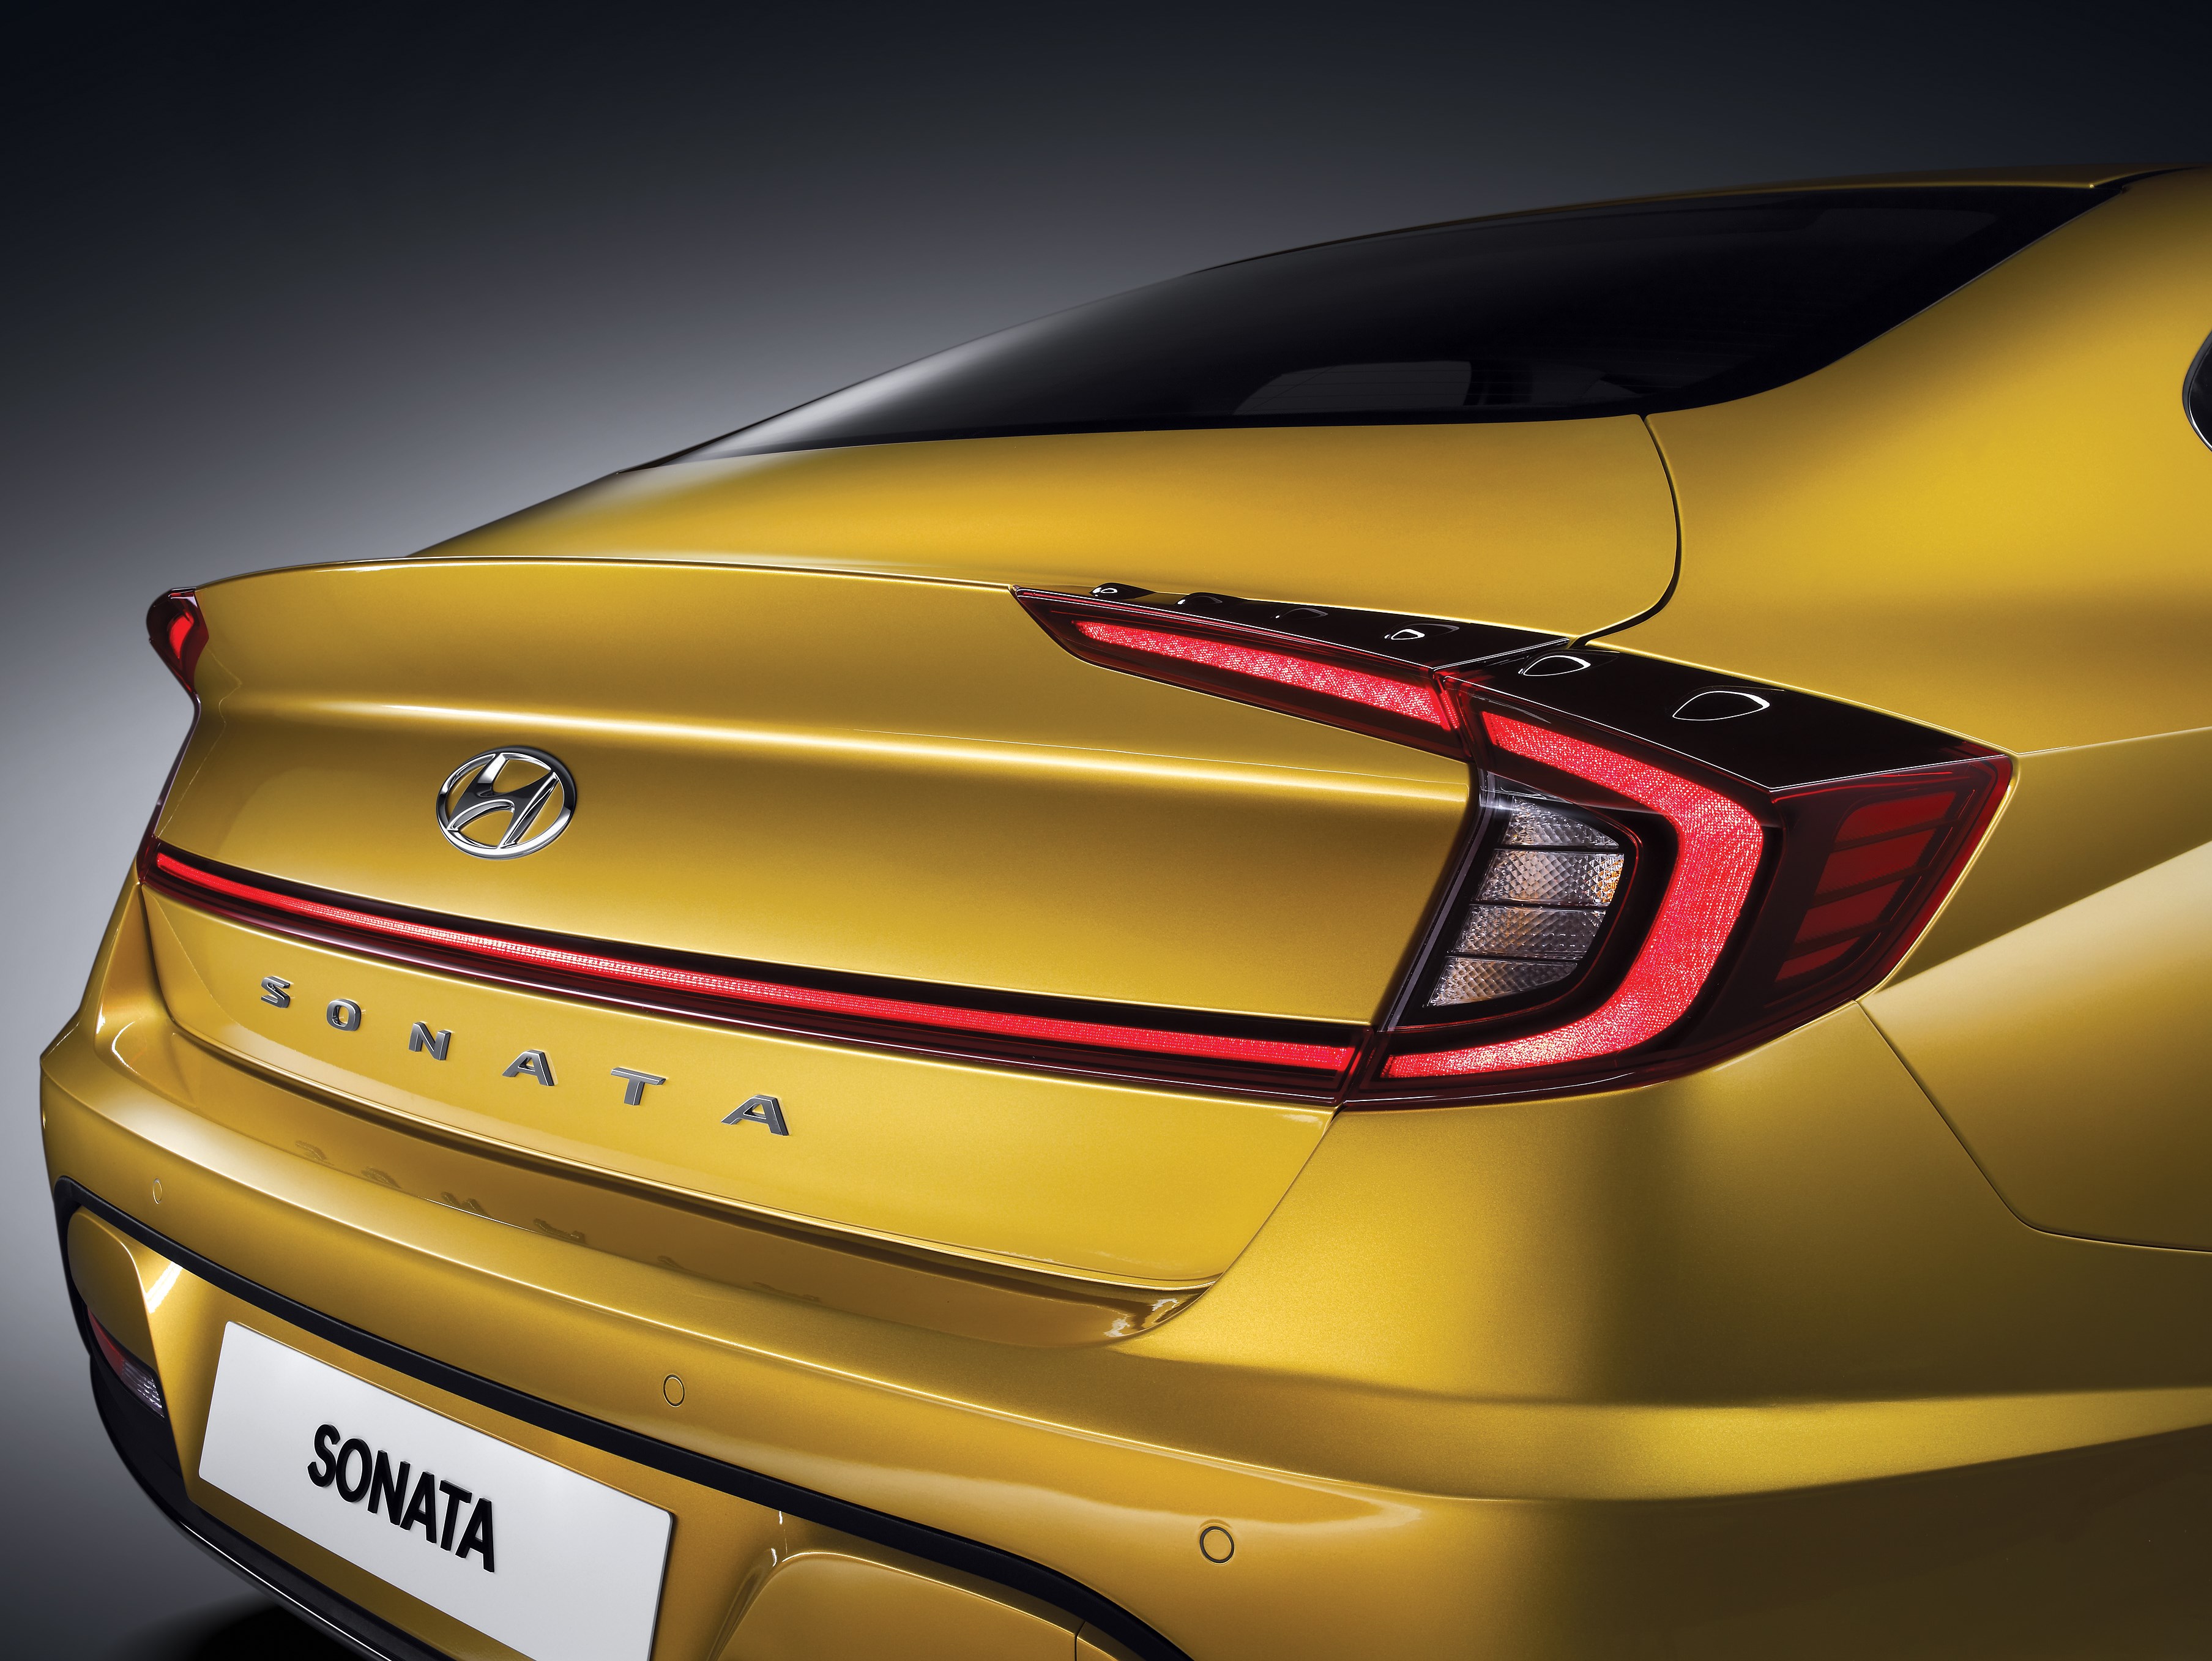 2020 Hyundai Sonata Revealed Australian Launch This Year